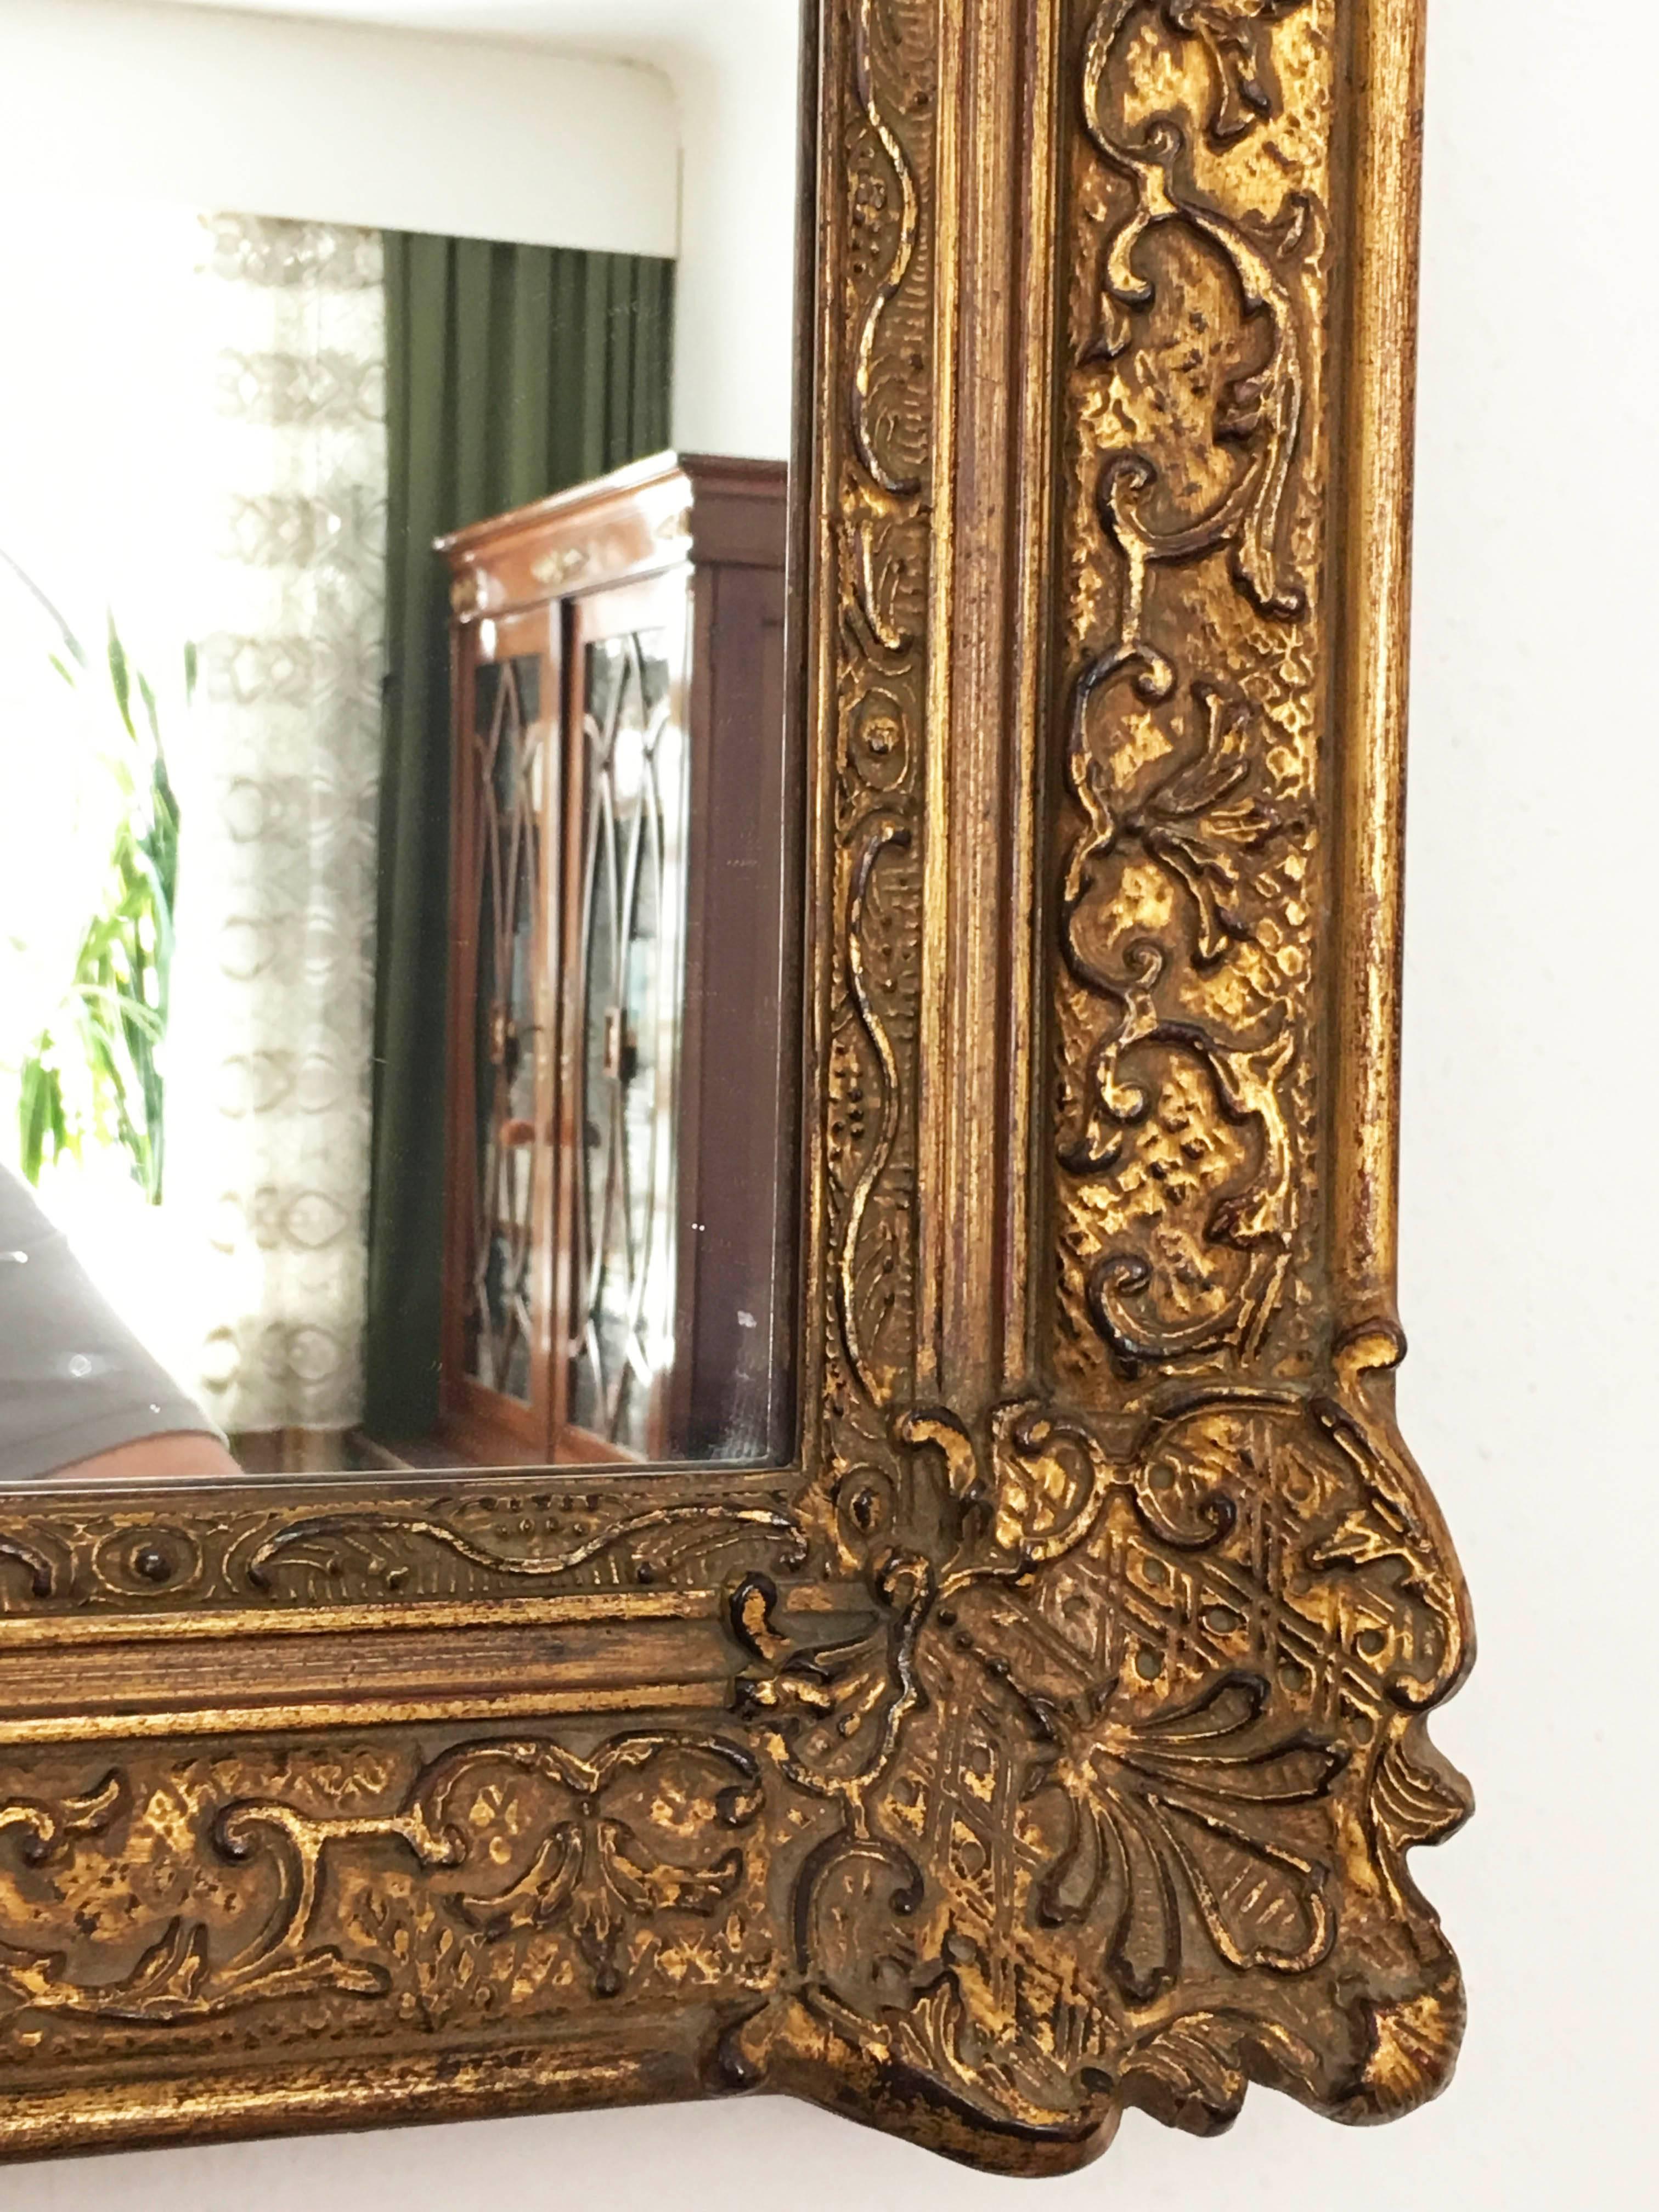 Hergestellt im frühen 20. Jahrhundert in Barock Stil Vergoldung geschnitzt Spiegel, der geformte Rahmen mit floralen Motiven, Blätter, Blumen geschnitzt. Wasservergoldung von polierter und matter Qualität, mit einigen Ausbluten der Bole, die